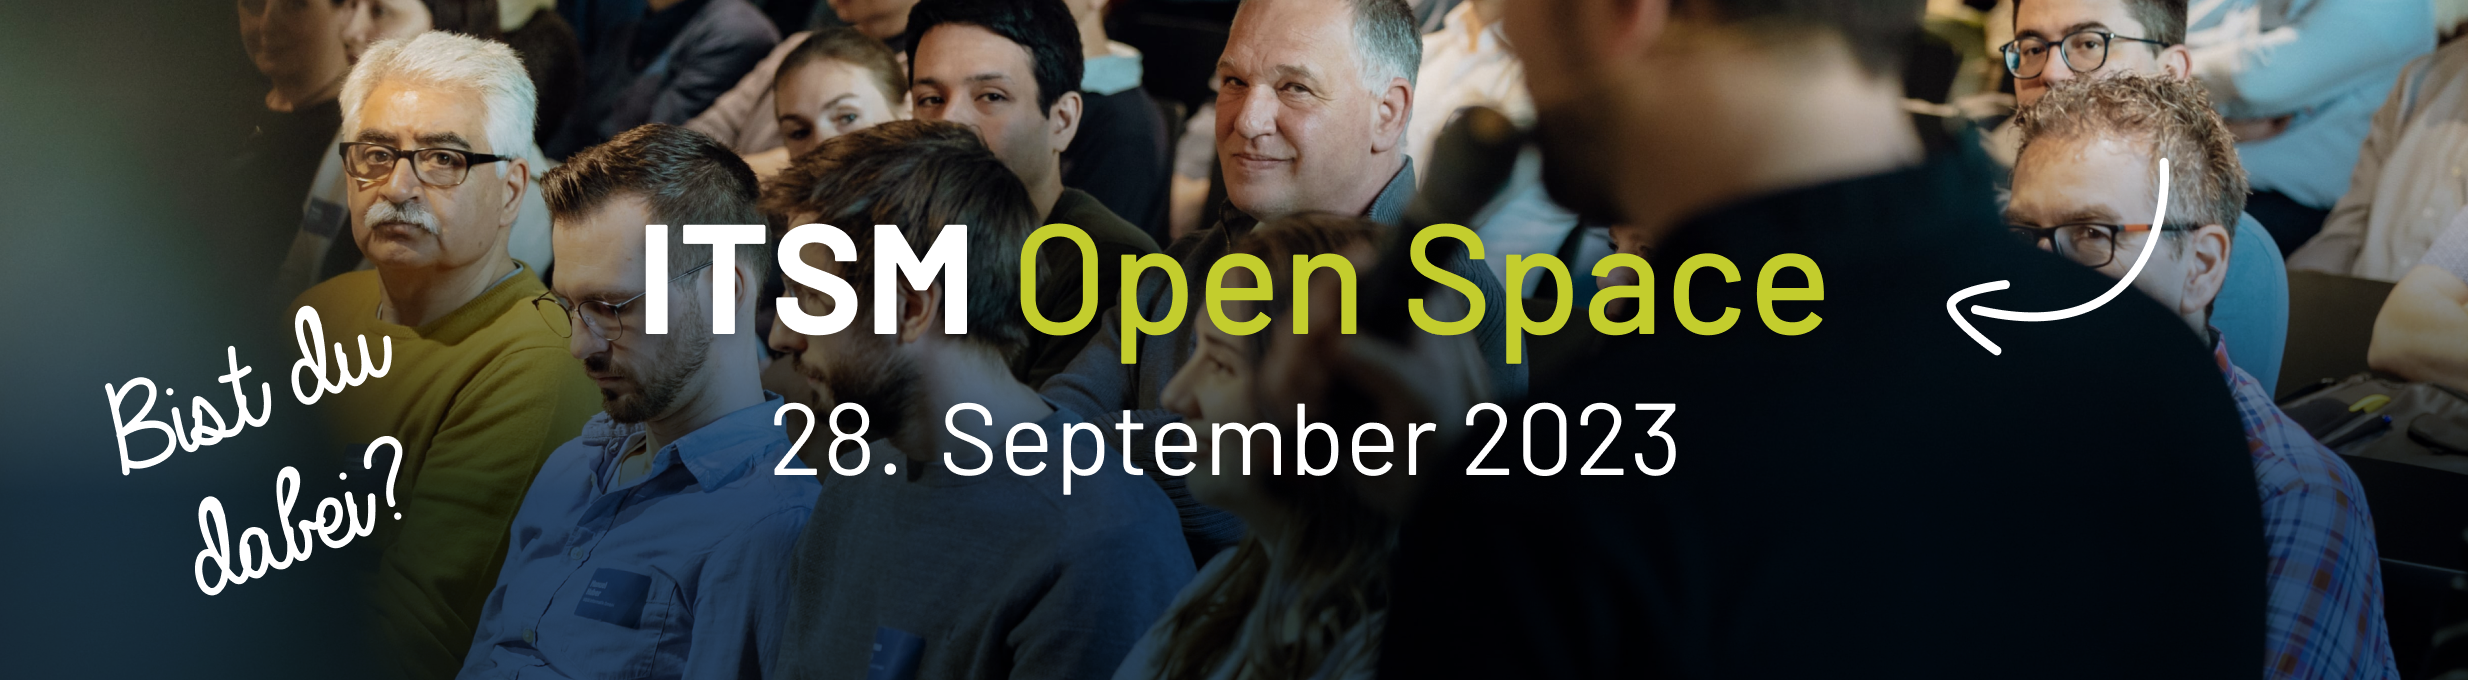 ITSM Open Space - gestalte die Zukunft des IT-Service-Managements